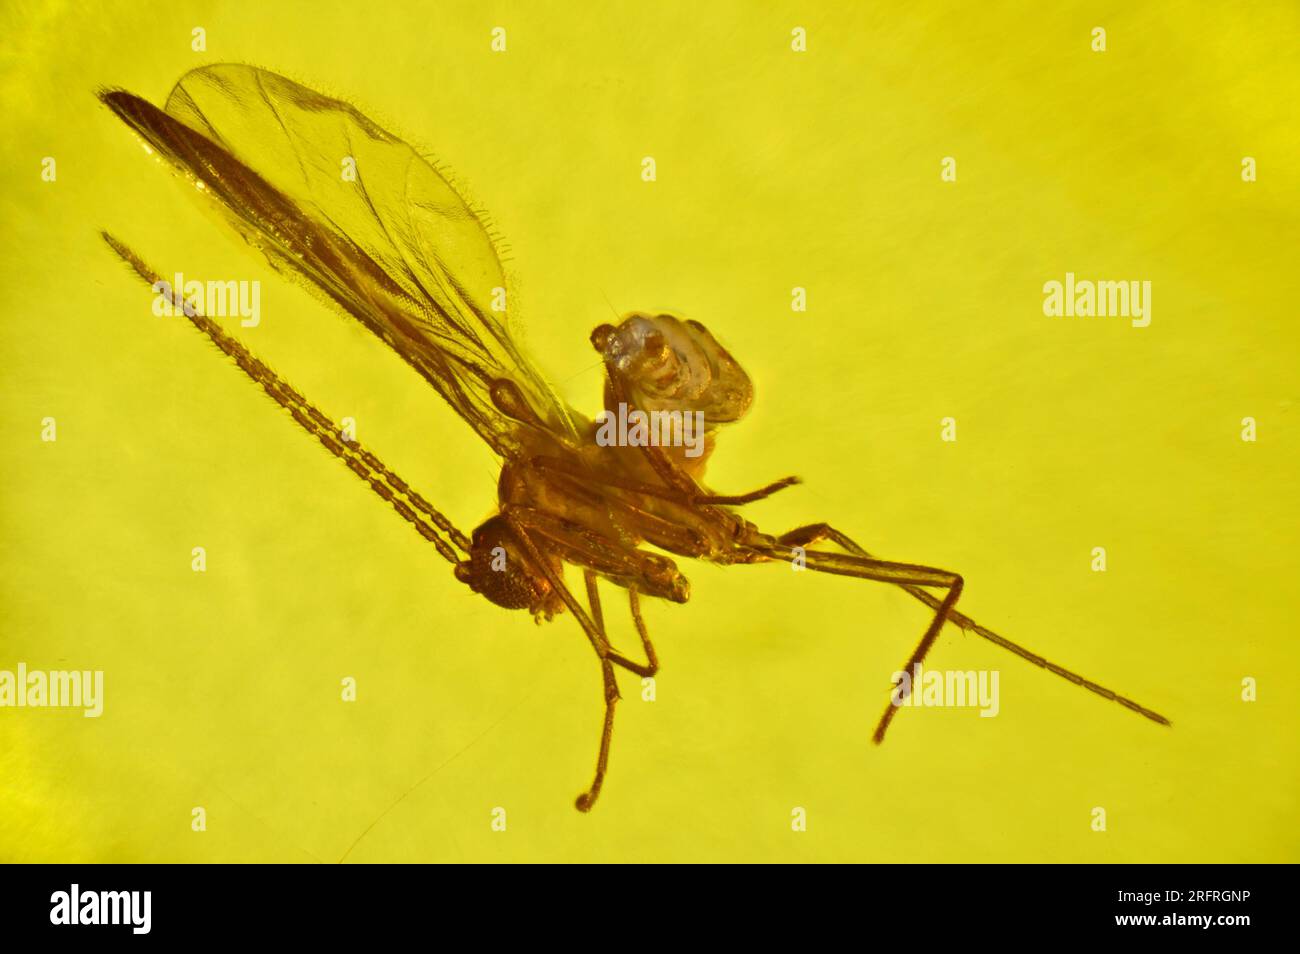 Prähistorische Fliege mit fehlendem Bauchraum, in bernsteinfarbener Farbe gehalten - Nahaufnahme durch ein Mikroskop Stockfoto